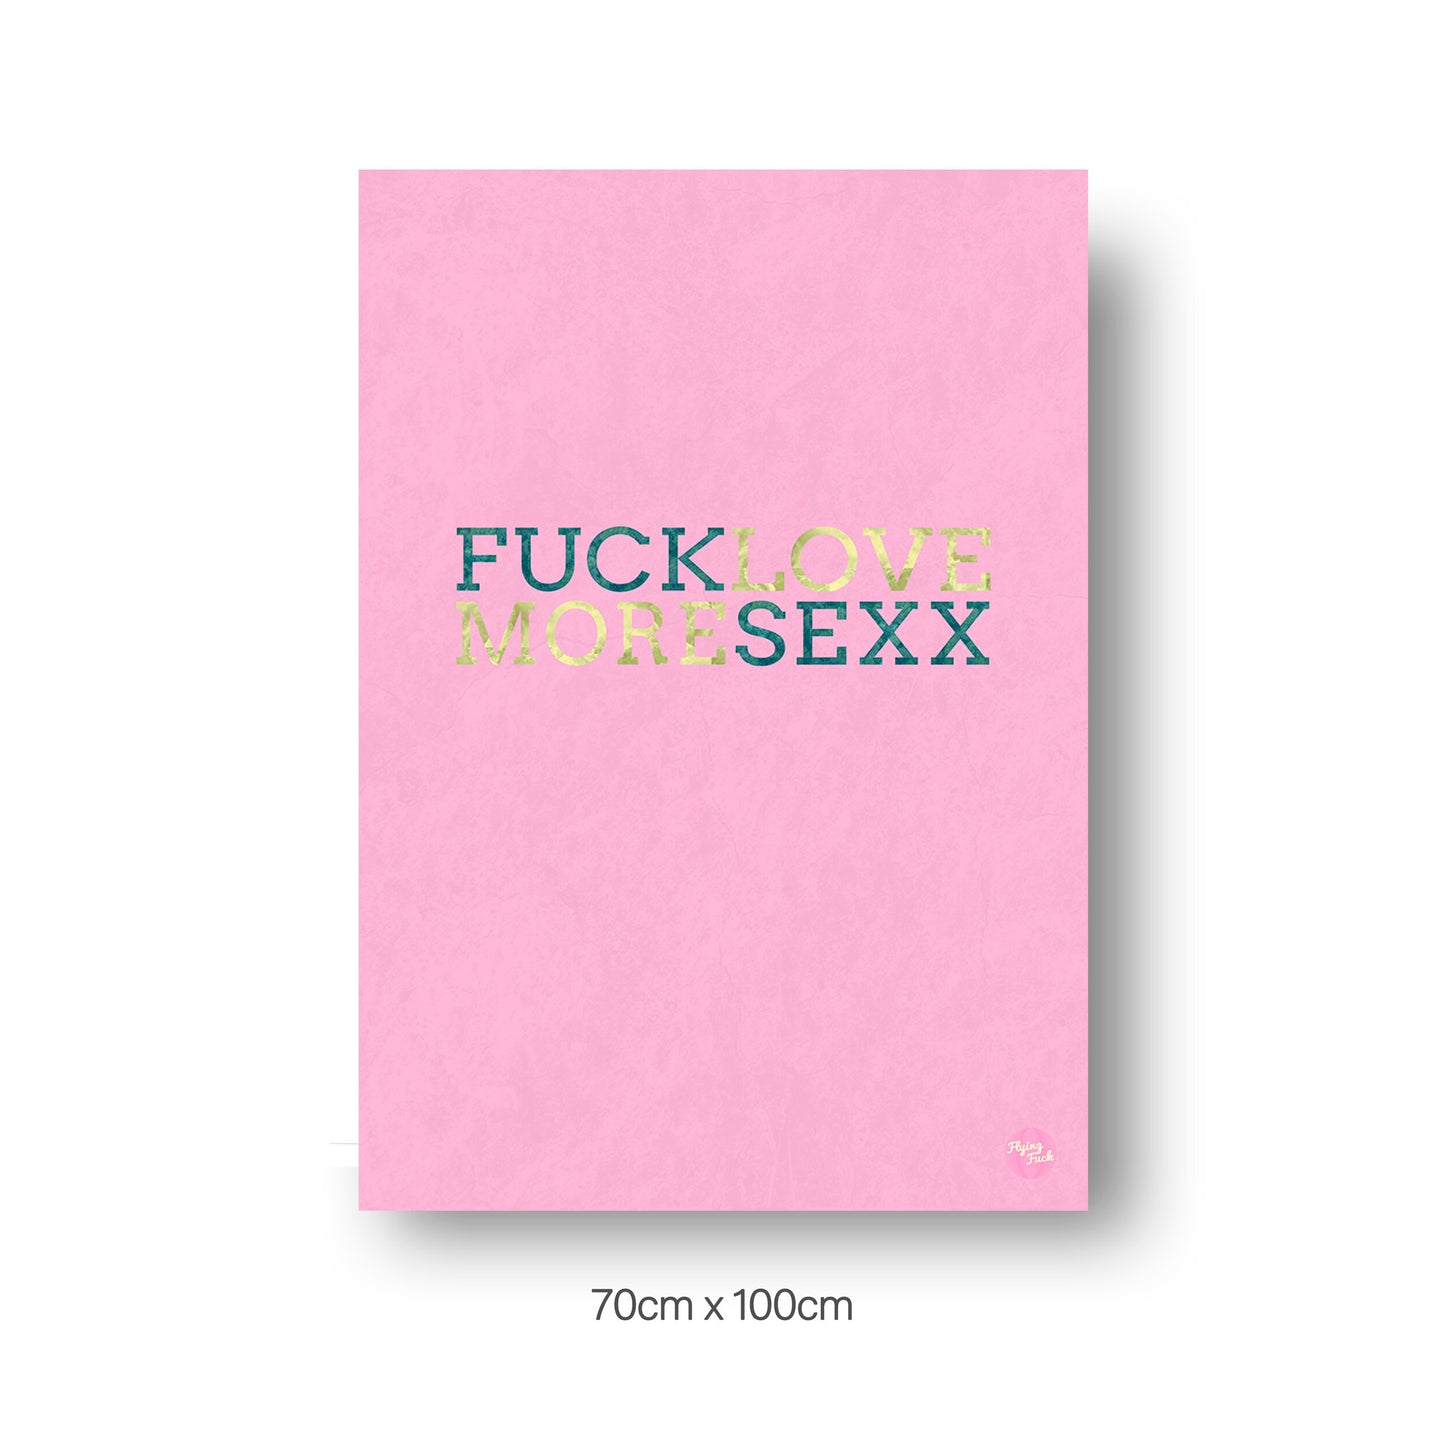 NOKUKO - art- Flying Fuck - Love More - pink 70cmx100cm print